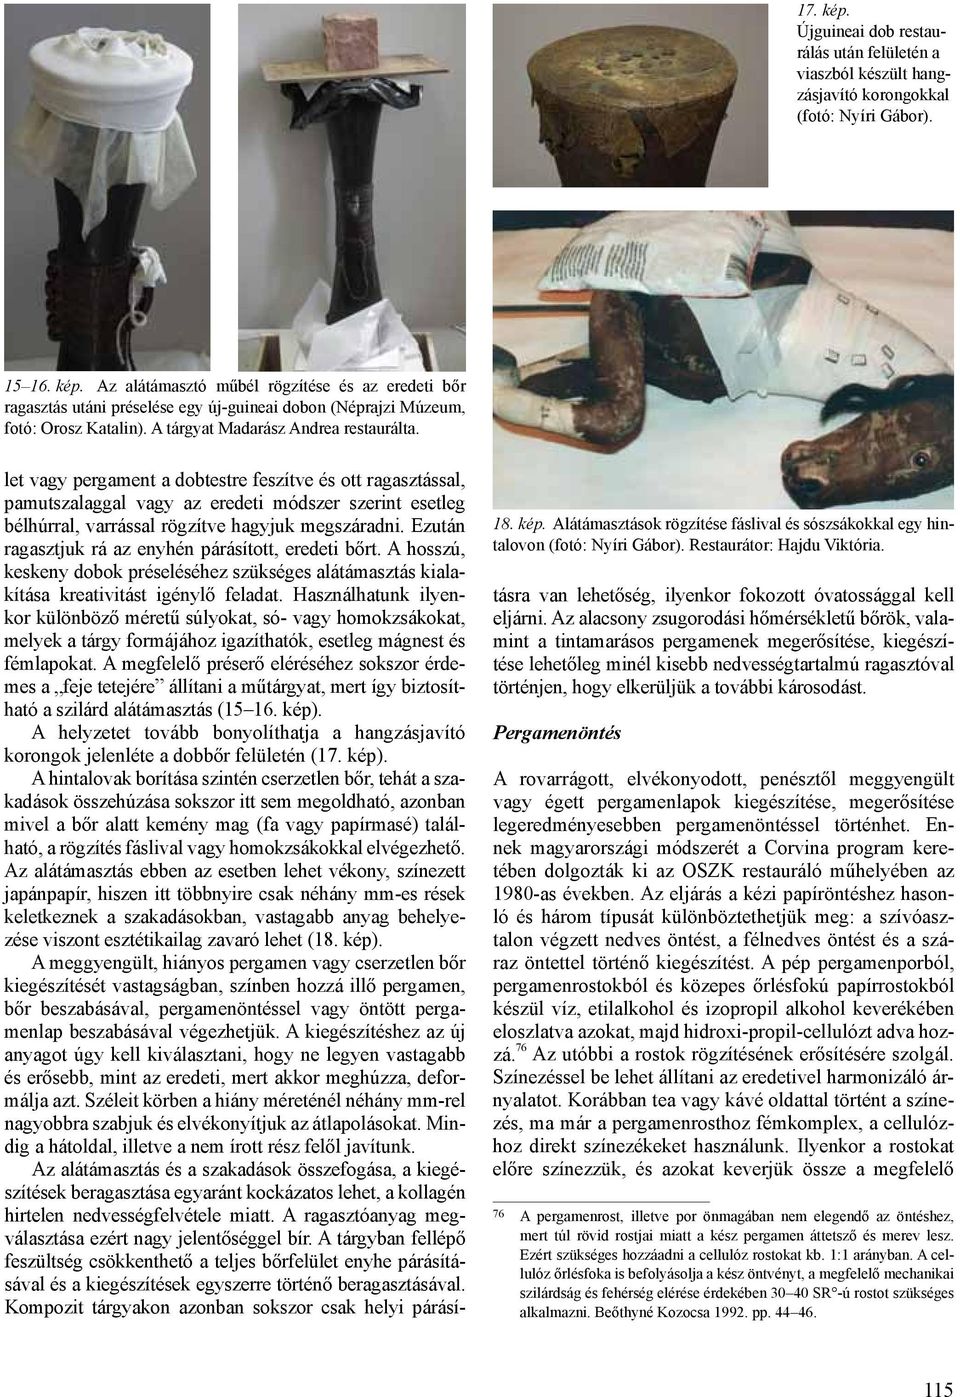 Pergamenből és cserzetlen bőrből készült tárgyak restaurálásának  lehetőségei, a kezelés hatása a műtárgyakra - PDF Ingyenes letöltés